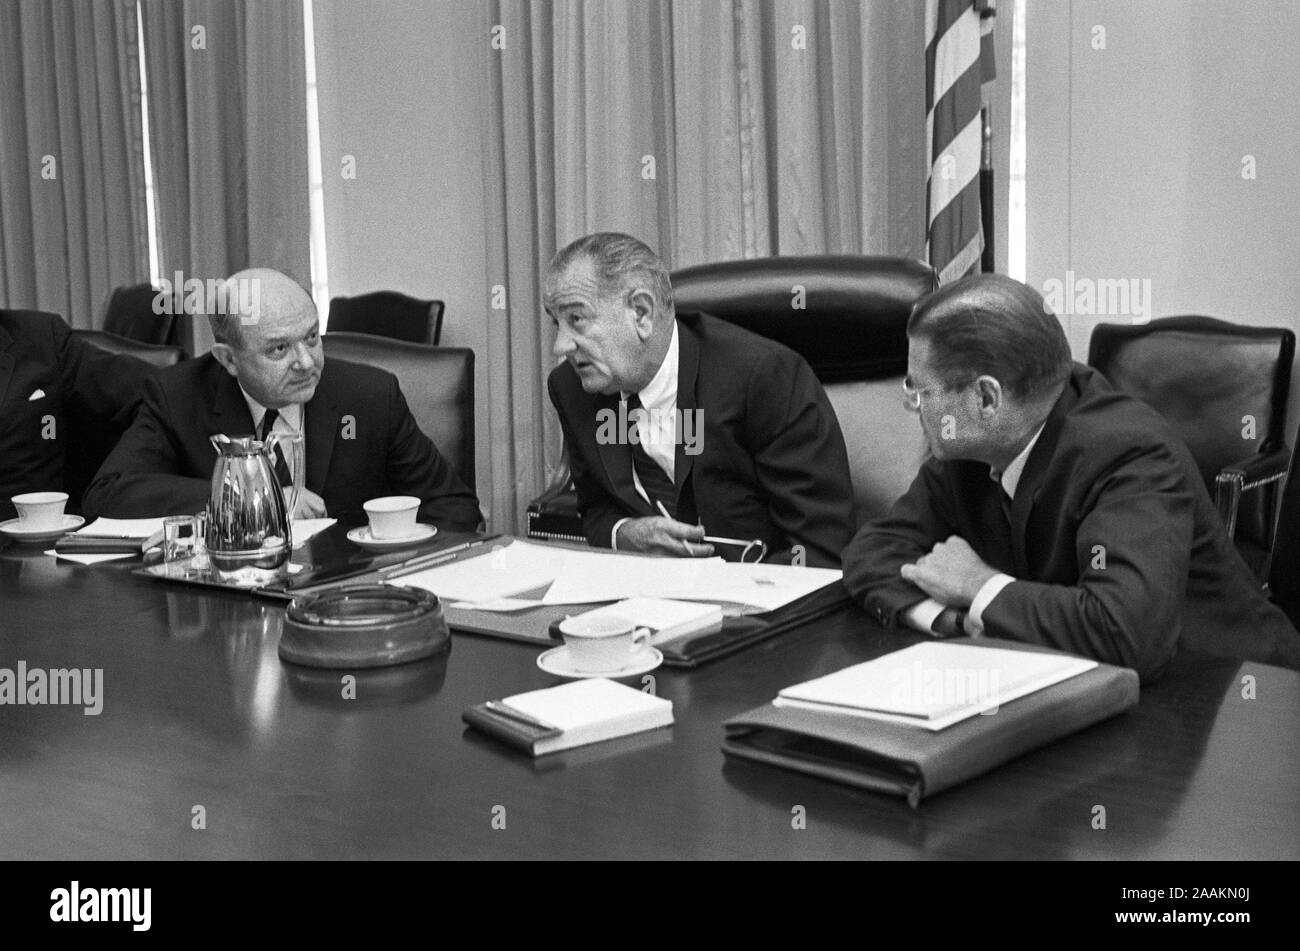 Us-Verteidigungsminister Robert McNamara (rechts), der US-Präsident Lyndon Johnson und US-Außenminister Dean Rusk, an einem Tisch nach McNamara's Rückkehr aus Südvietnam, Washington, D.C., USA, Foto von Warren K. Leffler, Juli 21, 1965 Sitzen Stockfoto